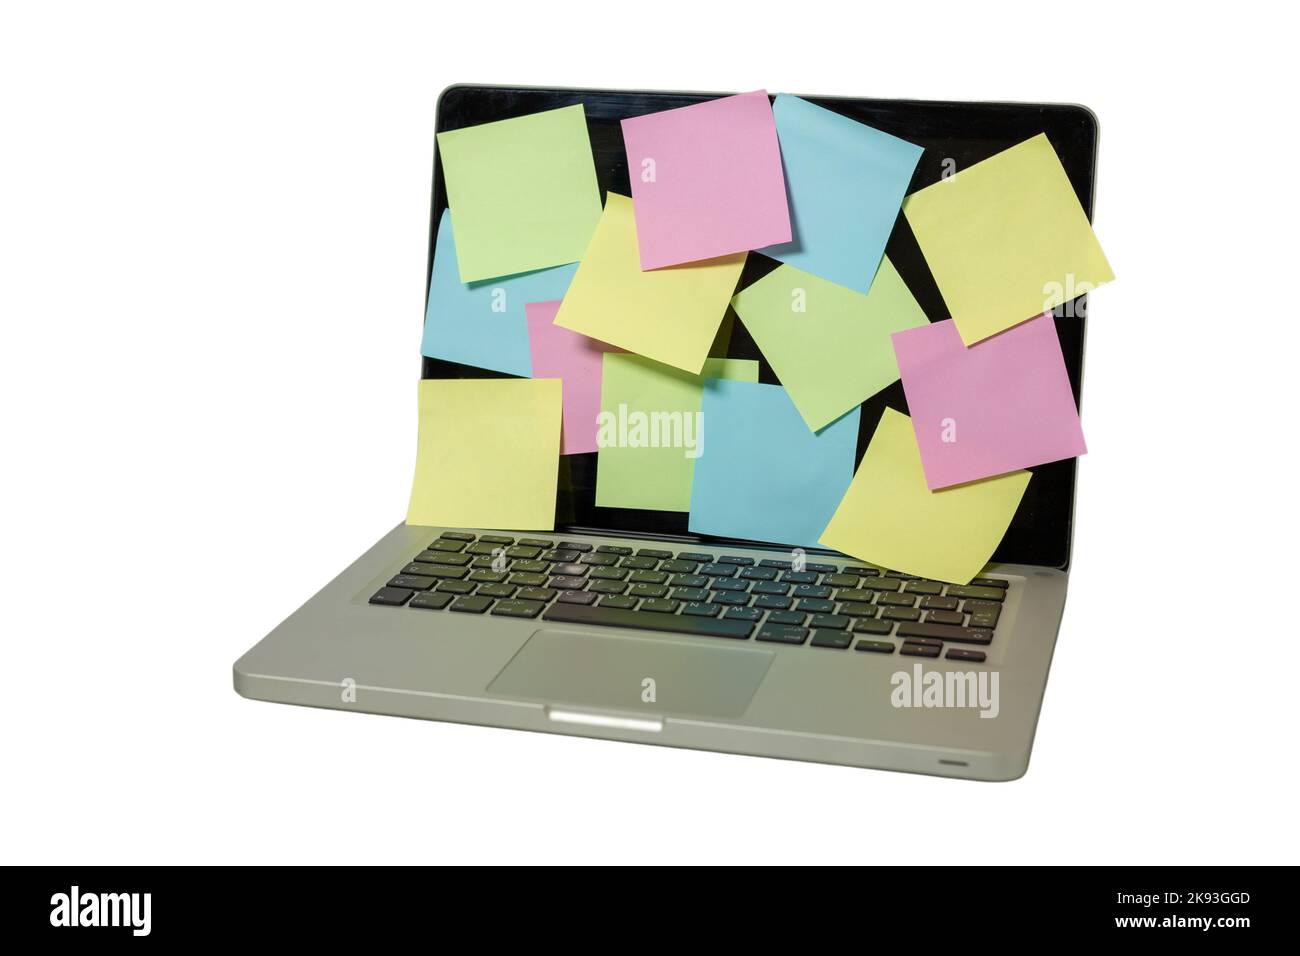 Schermo del notebook pieno di note adesive colorate isolate su sfondo bianco Foto Stock